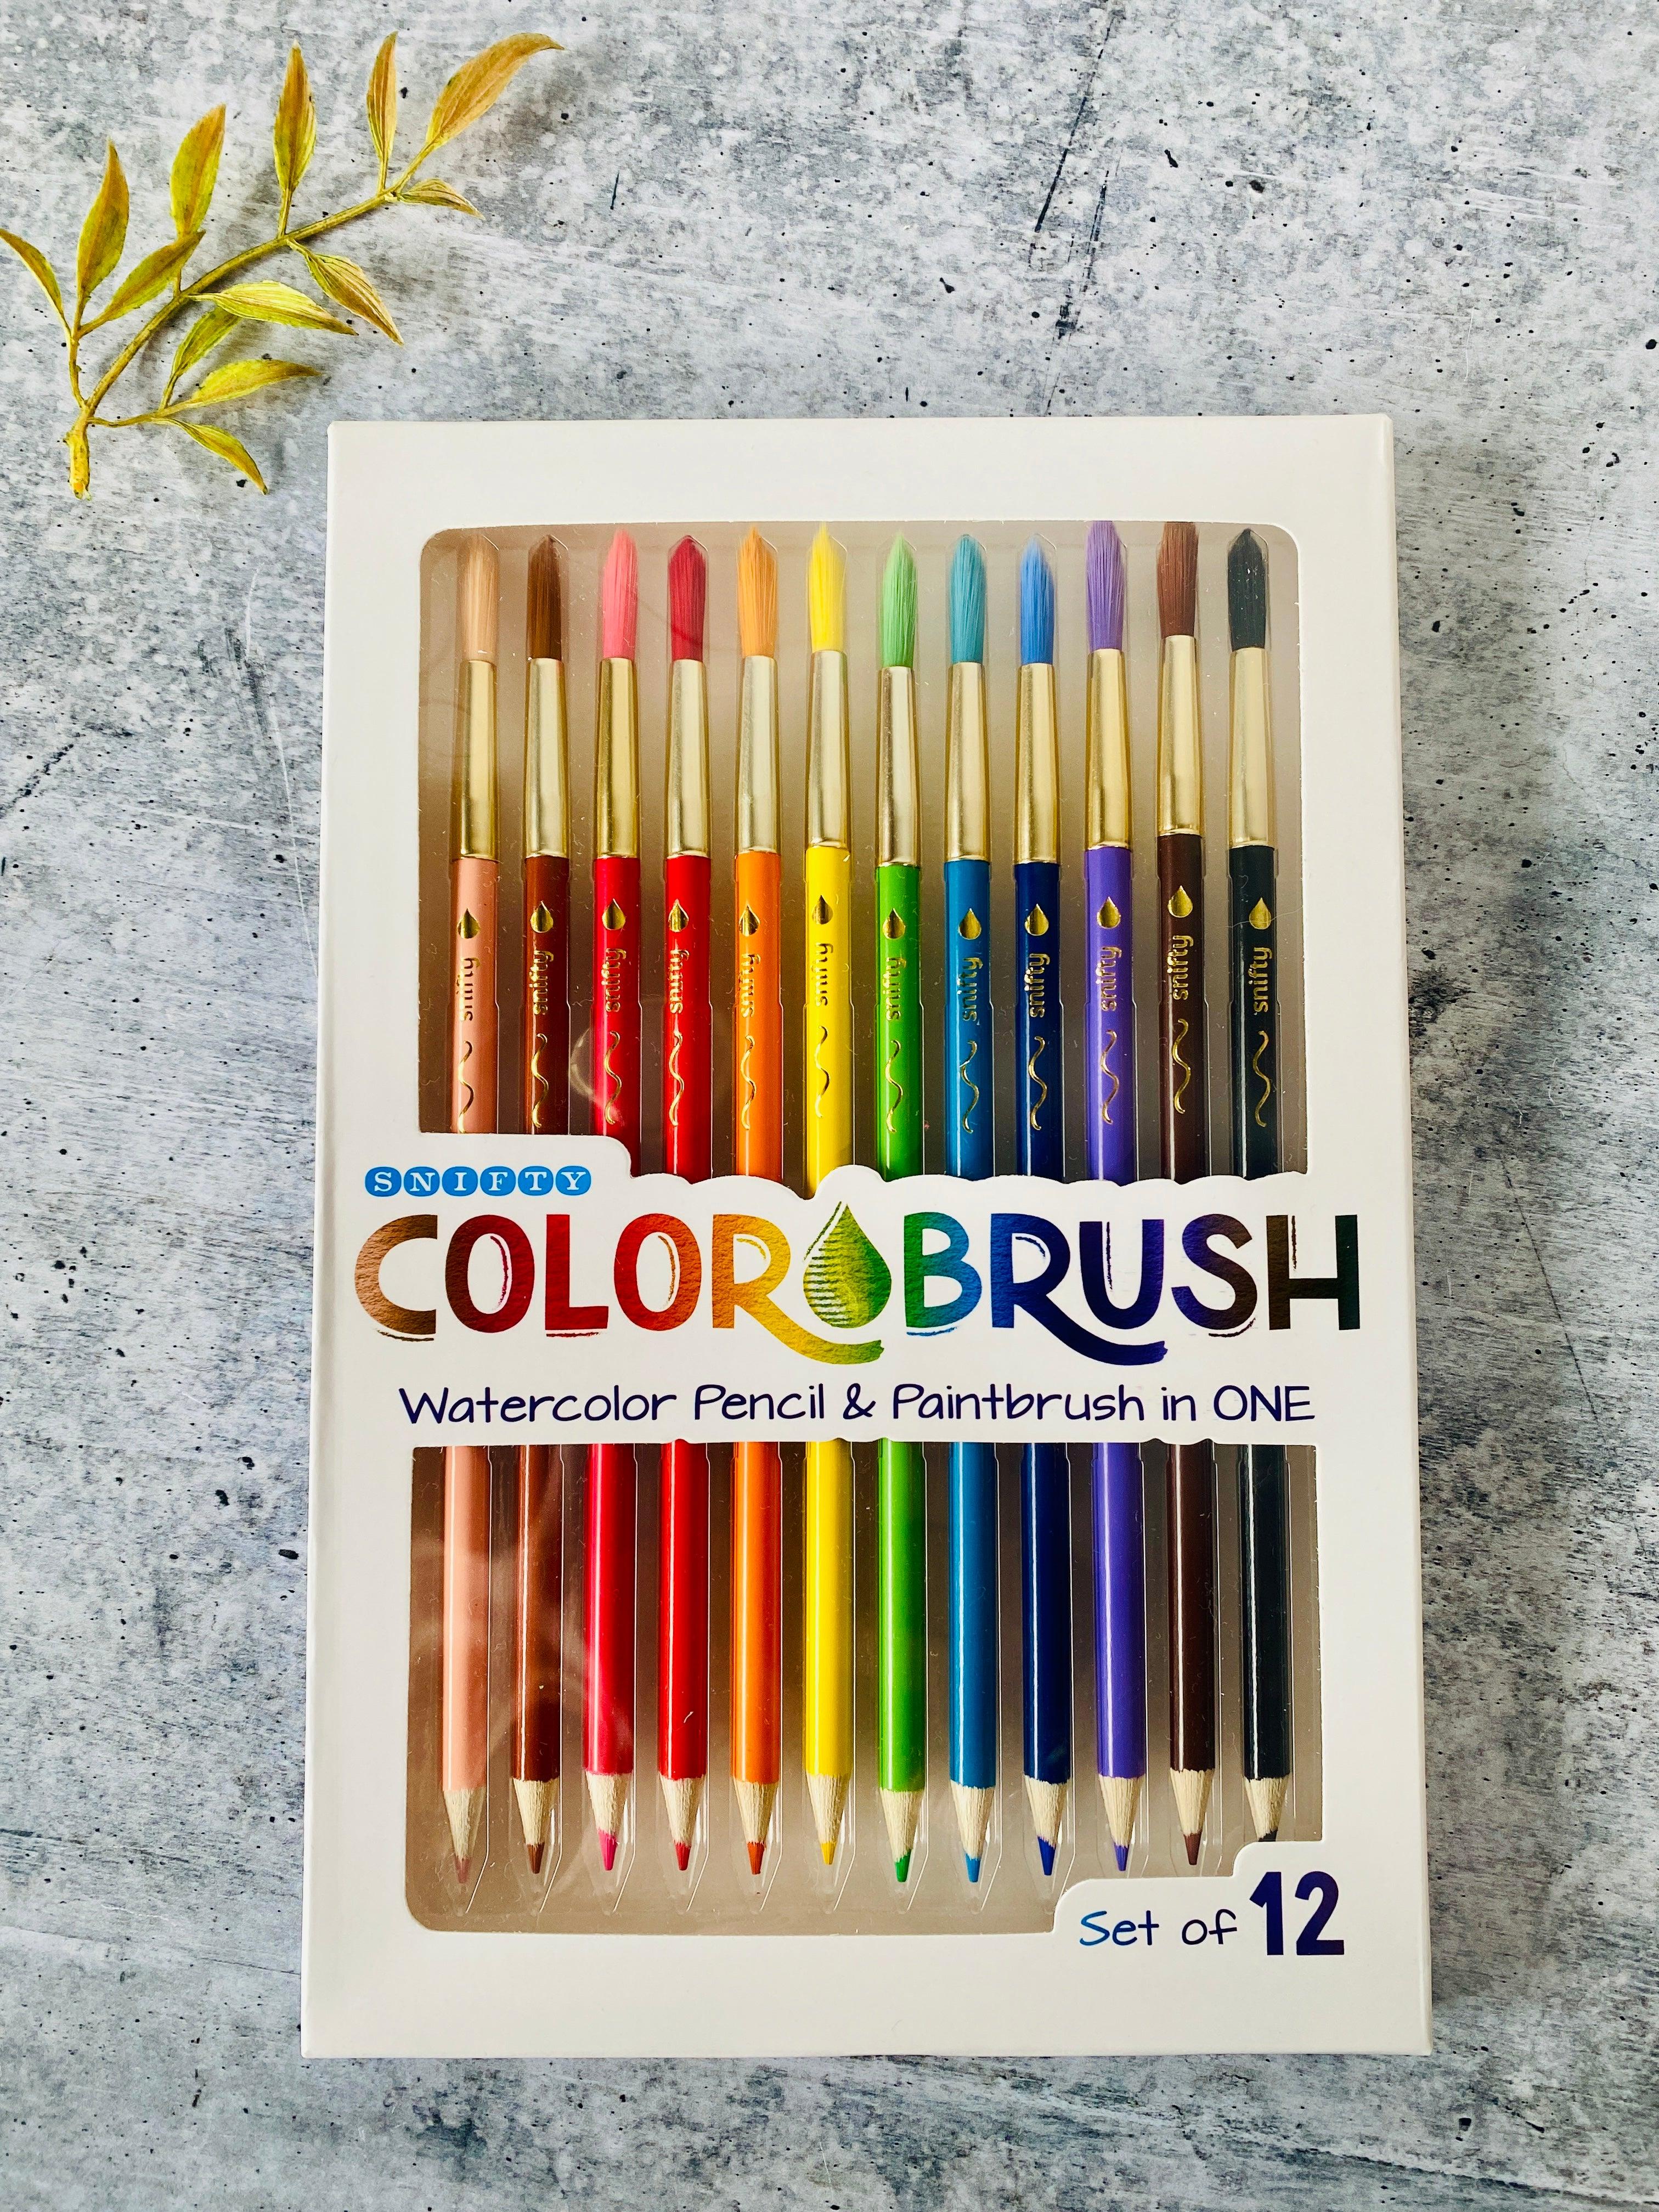 Colorbrush Watercolor Paint & Pencil Set